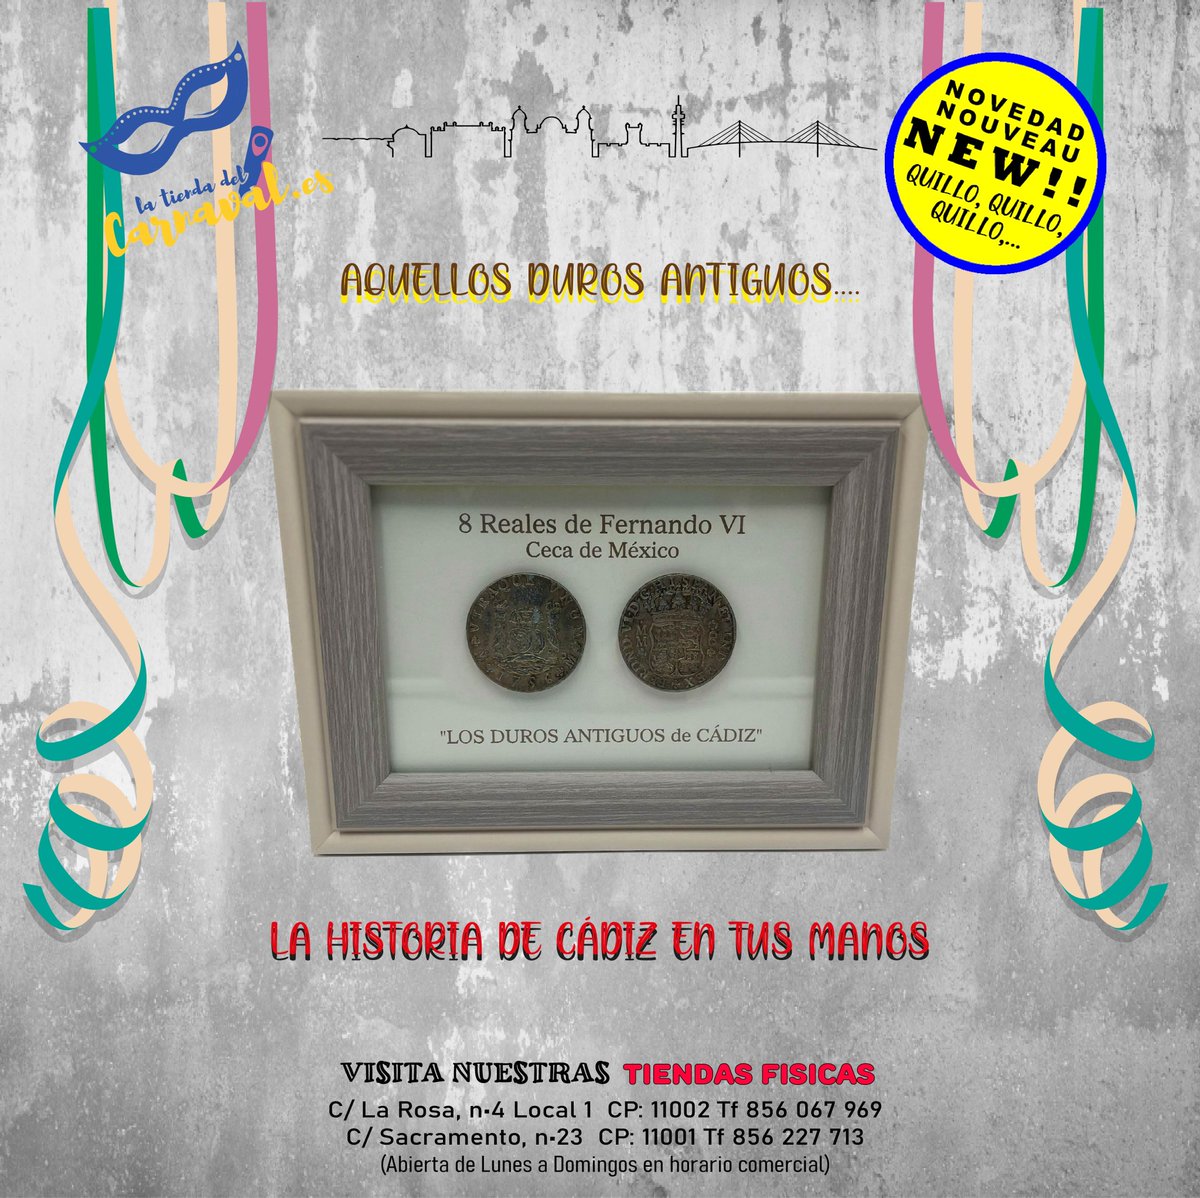 Descubre la historia en tus manos con estas réplicas exactas de los antiguos duros encontrados en Cádiz. Revive la riqueza y el pasado de la ciudad a través de estas monedas. 💰🏛️latiendadelcarnaval.es/producto/duros… Quieres los tuyos??? #HistoriaDeCádiz #Numismática